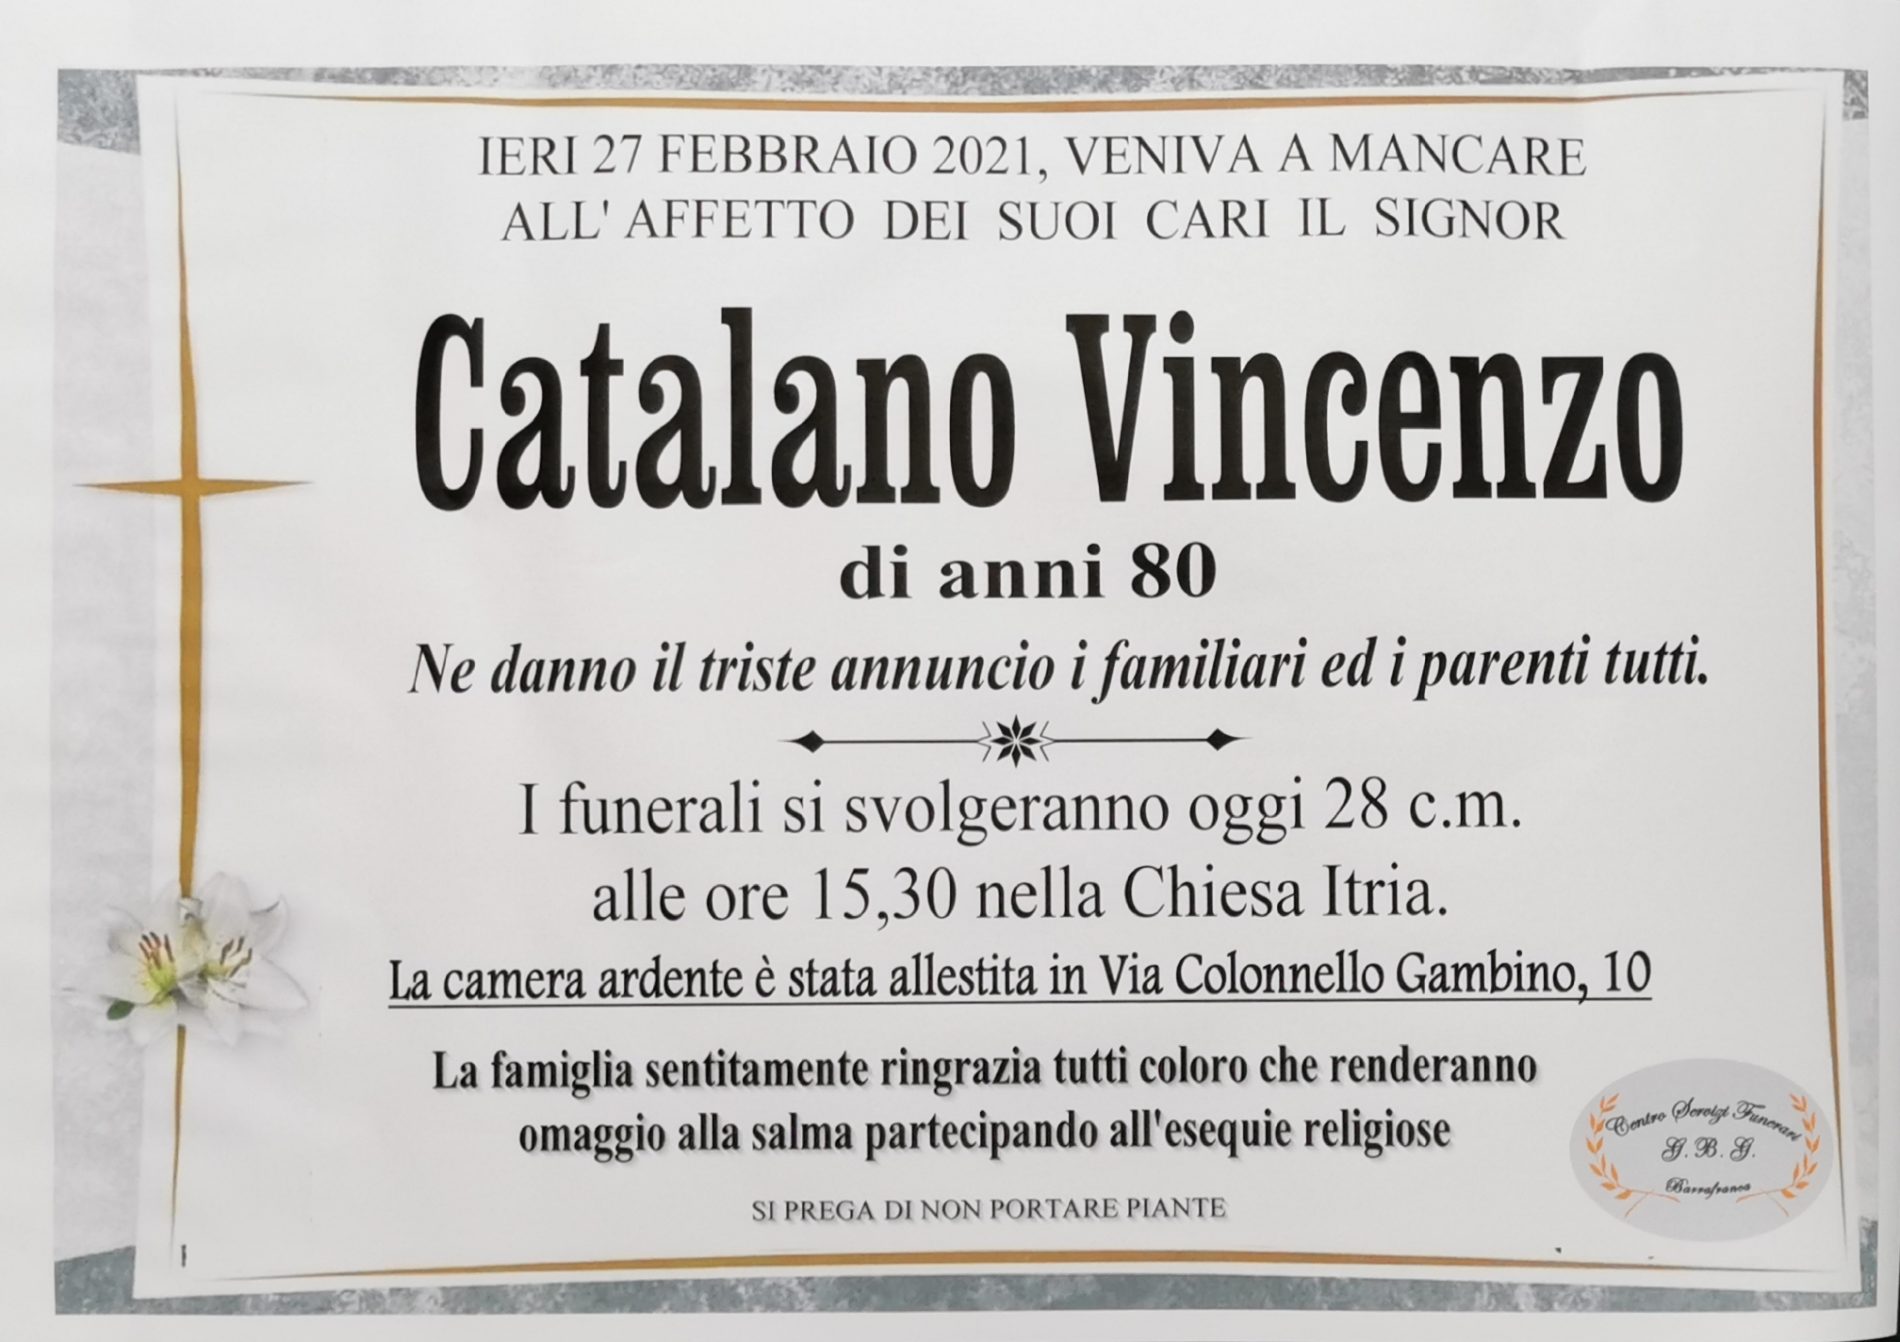 Annuncio servizi funerari agenzia G.B.G. sig. Catalano Vincenzo di anni 80